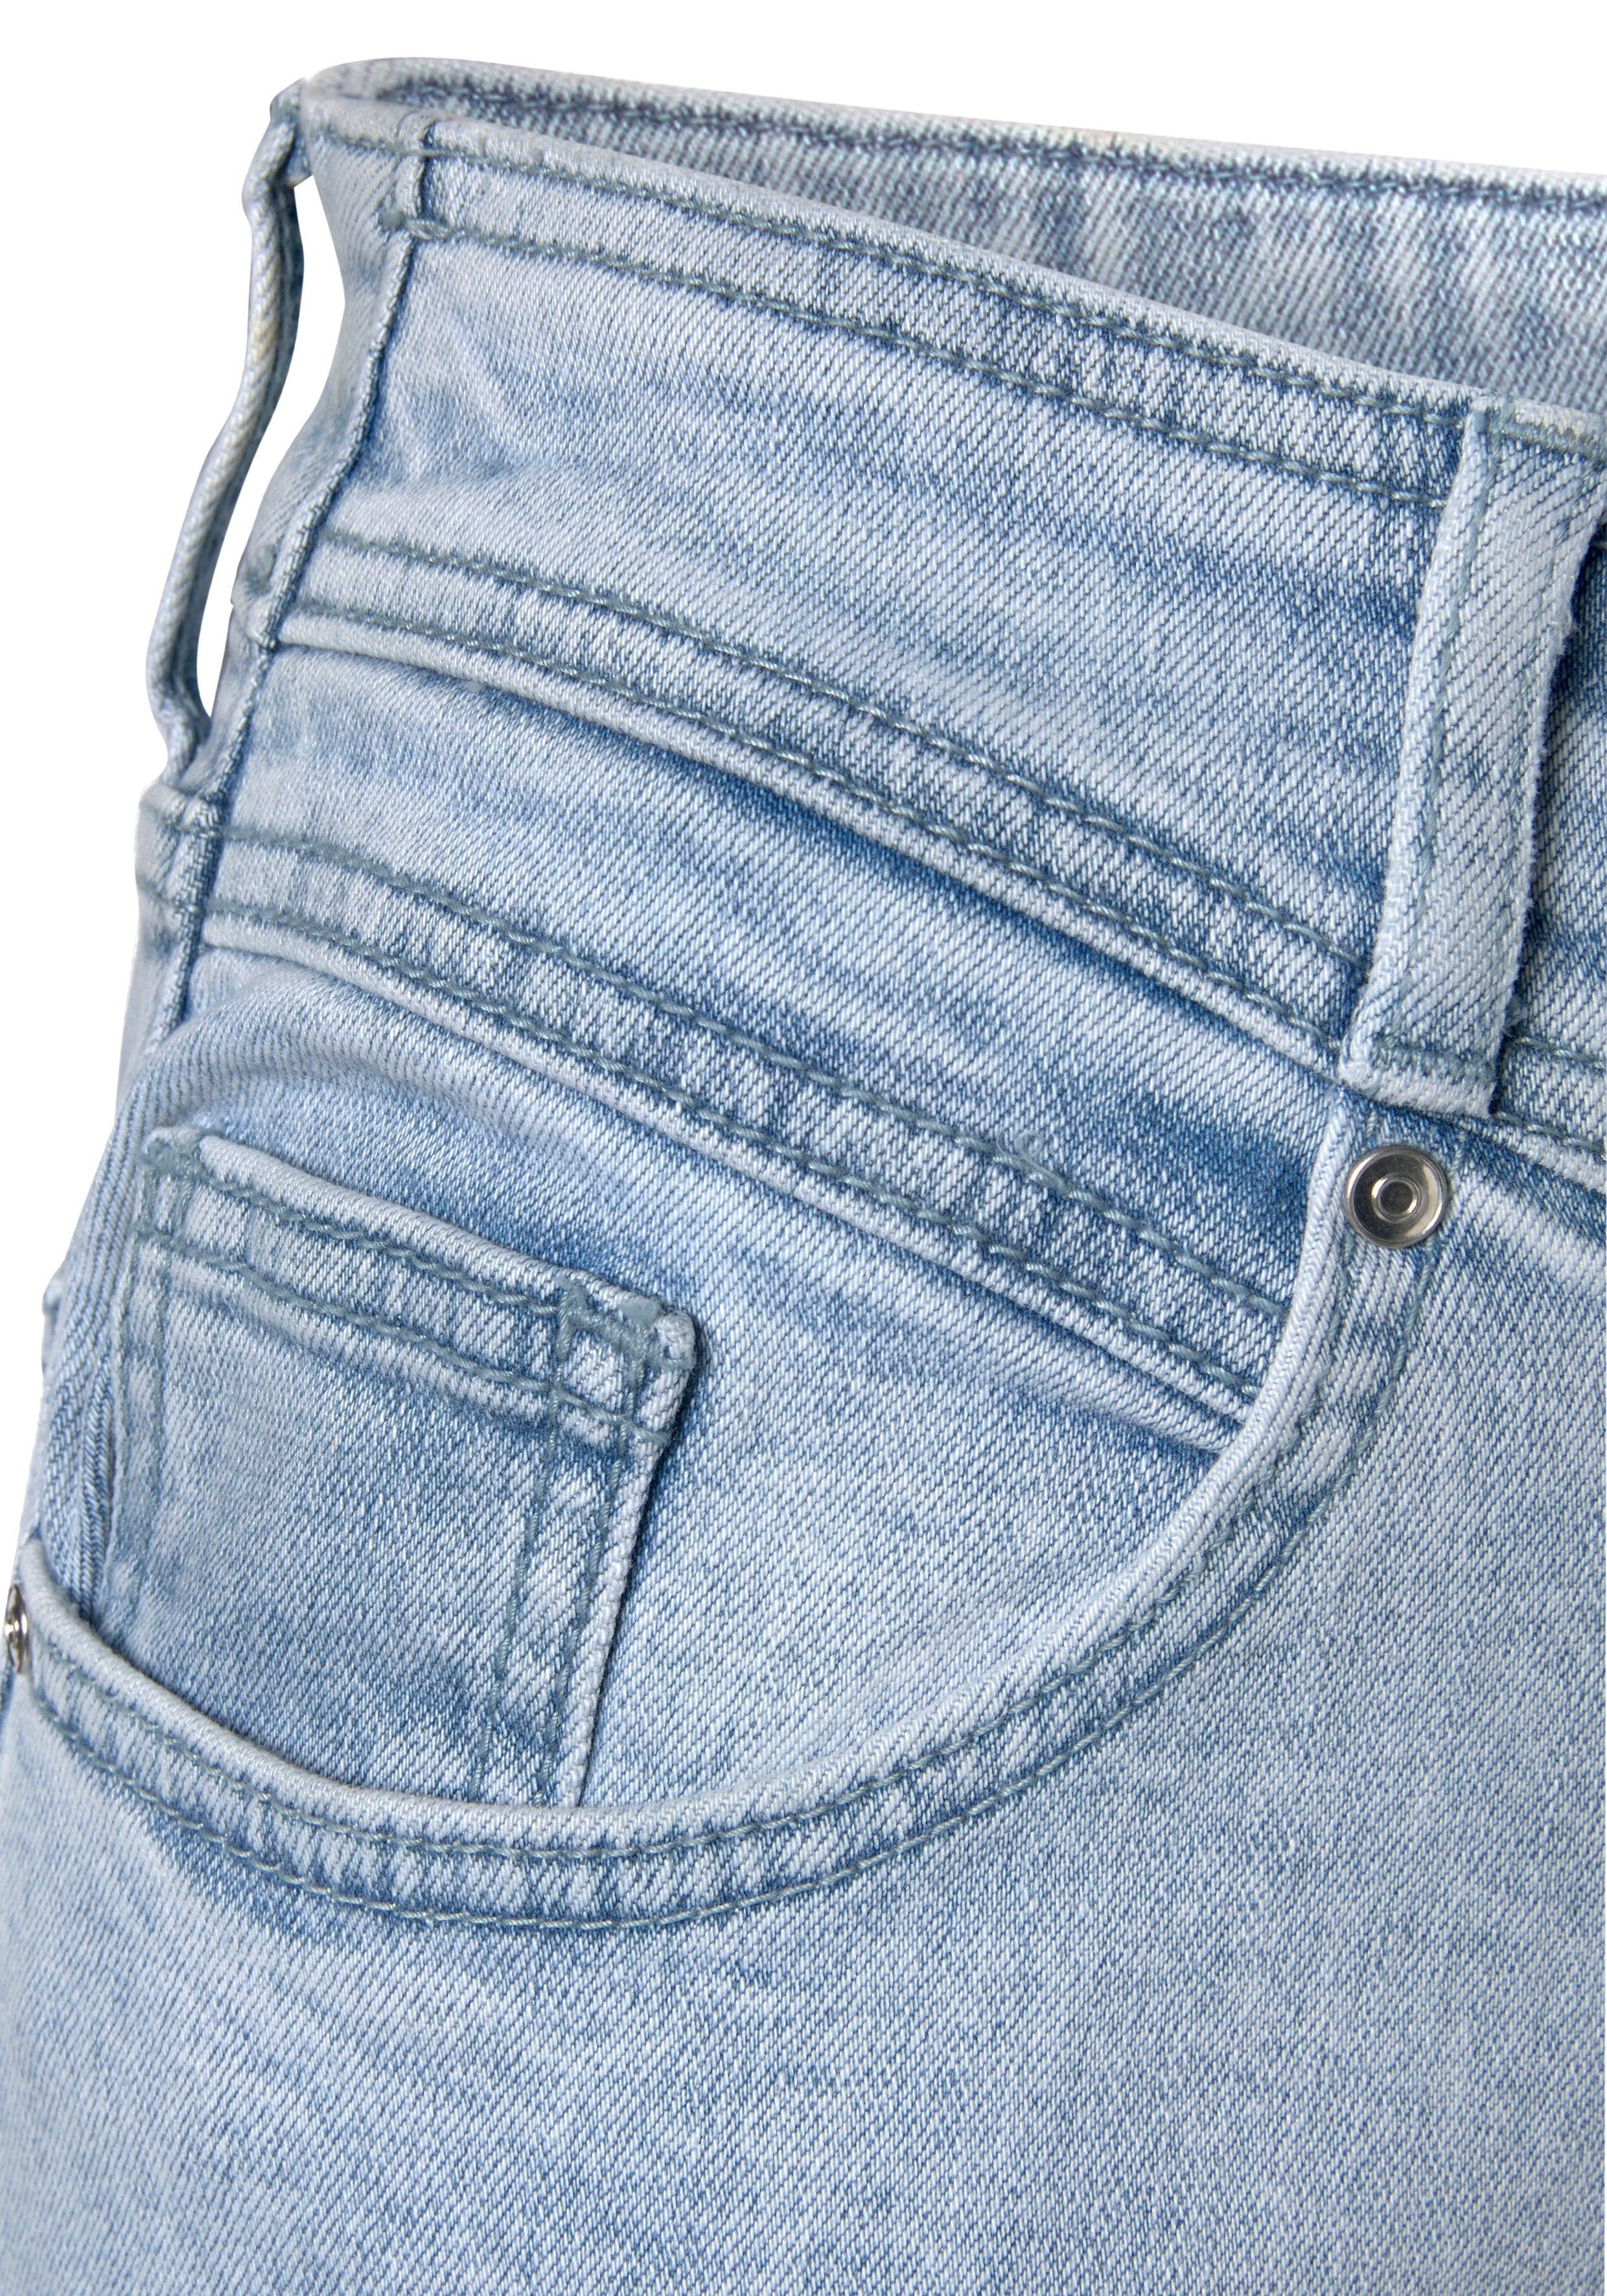 mit hellblau-washed LASCANA Beinabschlüssen leicht ausgefransten 7/8-Jeans